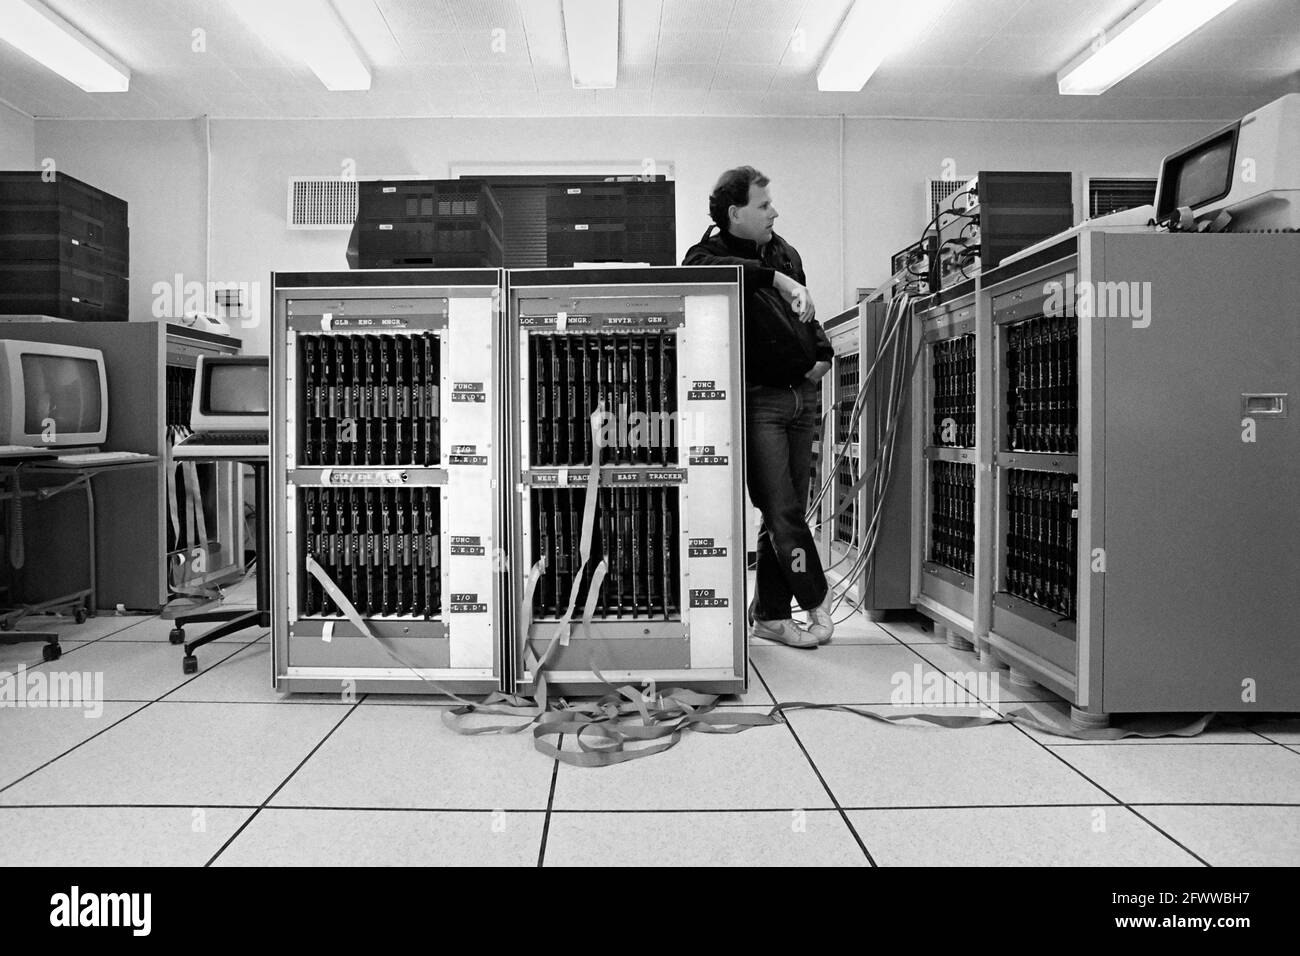 Un capo del team di progetto JPL/Caltech conduce un 'Test di moke'; monitorando le funzioni del supercomputer Hypercube Mark III man mano che le dimensioni sono più grandi. Ciascuna scheda comprende un nodo nel complesso del calcolo parallelo. L'Hypercube Mark III ha integrato 128 nodi; ogni nodo ha la potenza di 25 minicomputer VAX.? La velocità di picco è stata di 2 miliardi di operazioni in virgola mobile al secondo.? È stato costruito con microprocessori Motorola 68020 ed è stato uno sforzo congiunto di Caltech e JPL.? Foto Stock